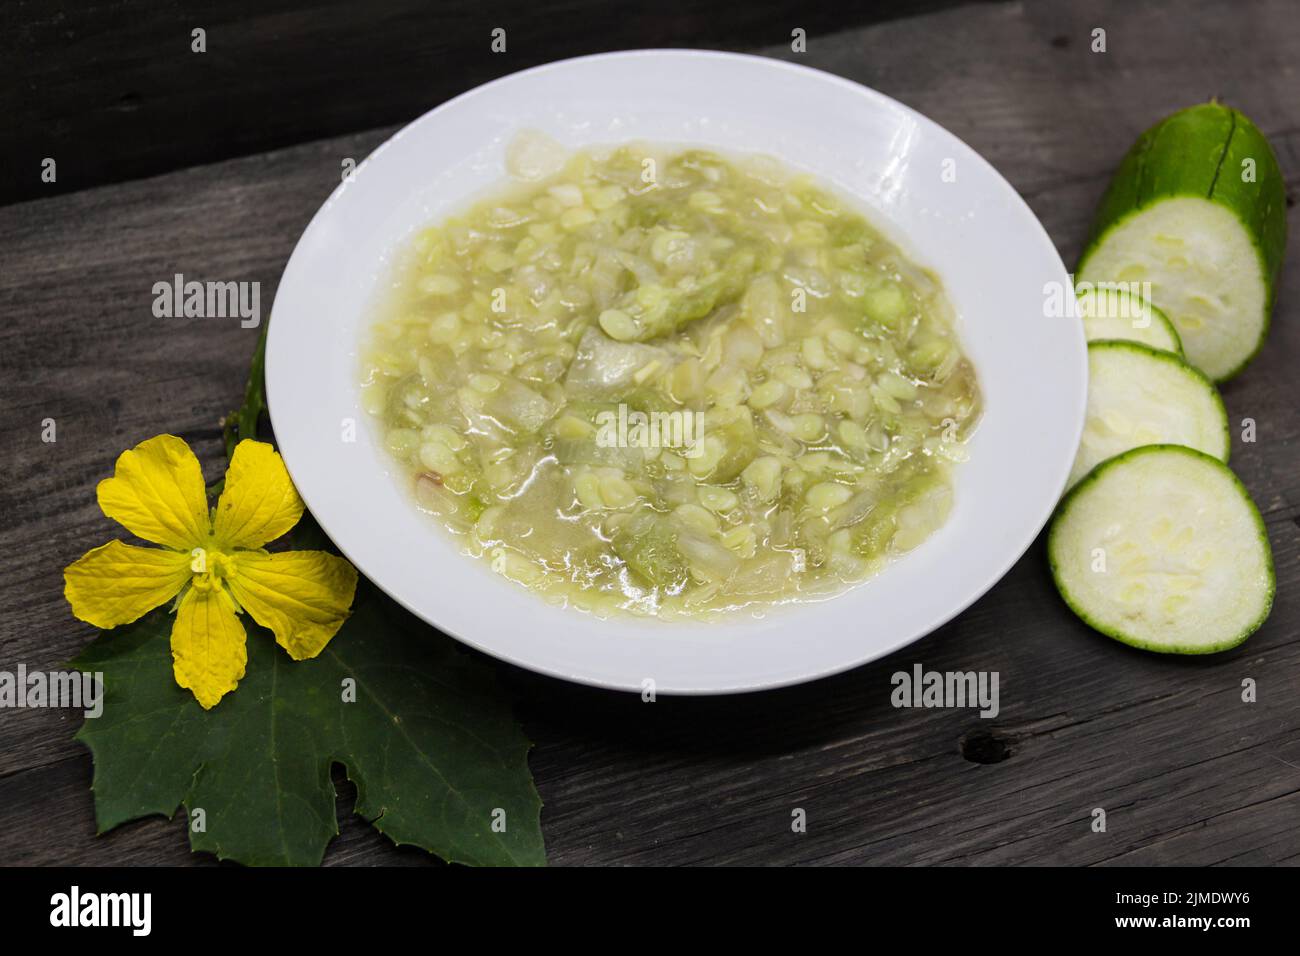 Gericht aus Luffa oder unreifen Gemüseschwamm, gebraten mit Knoblauch und Zwiebeln. Asiatische Küche Stockfoto